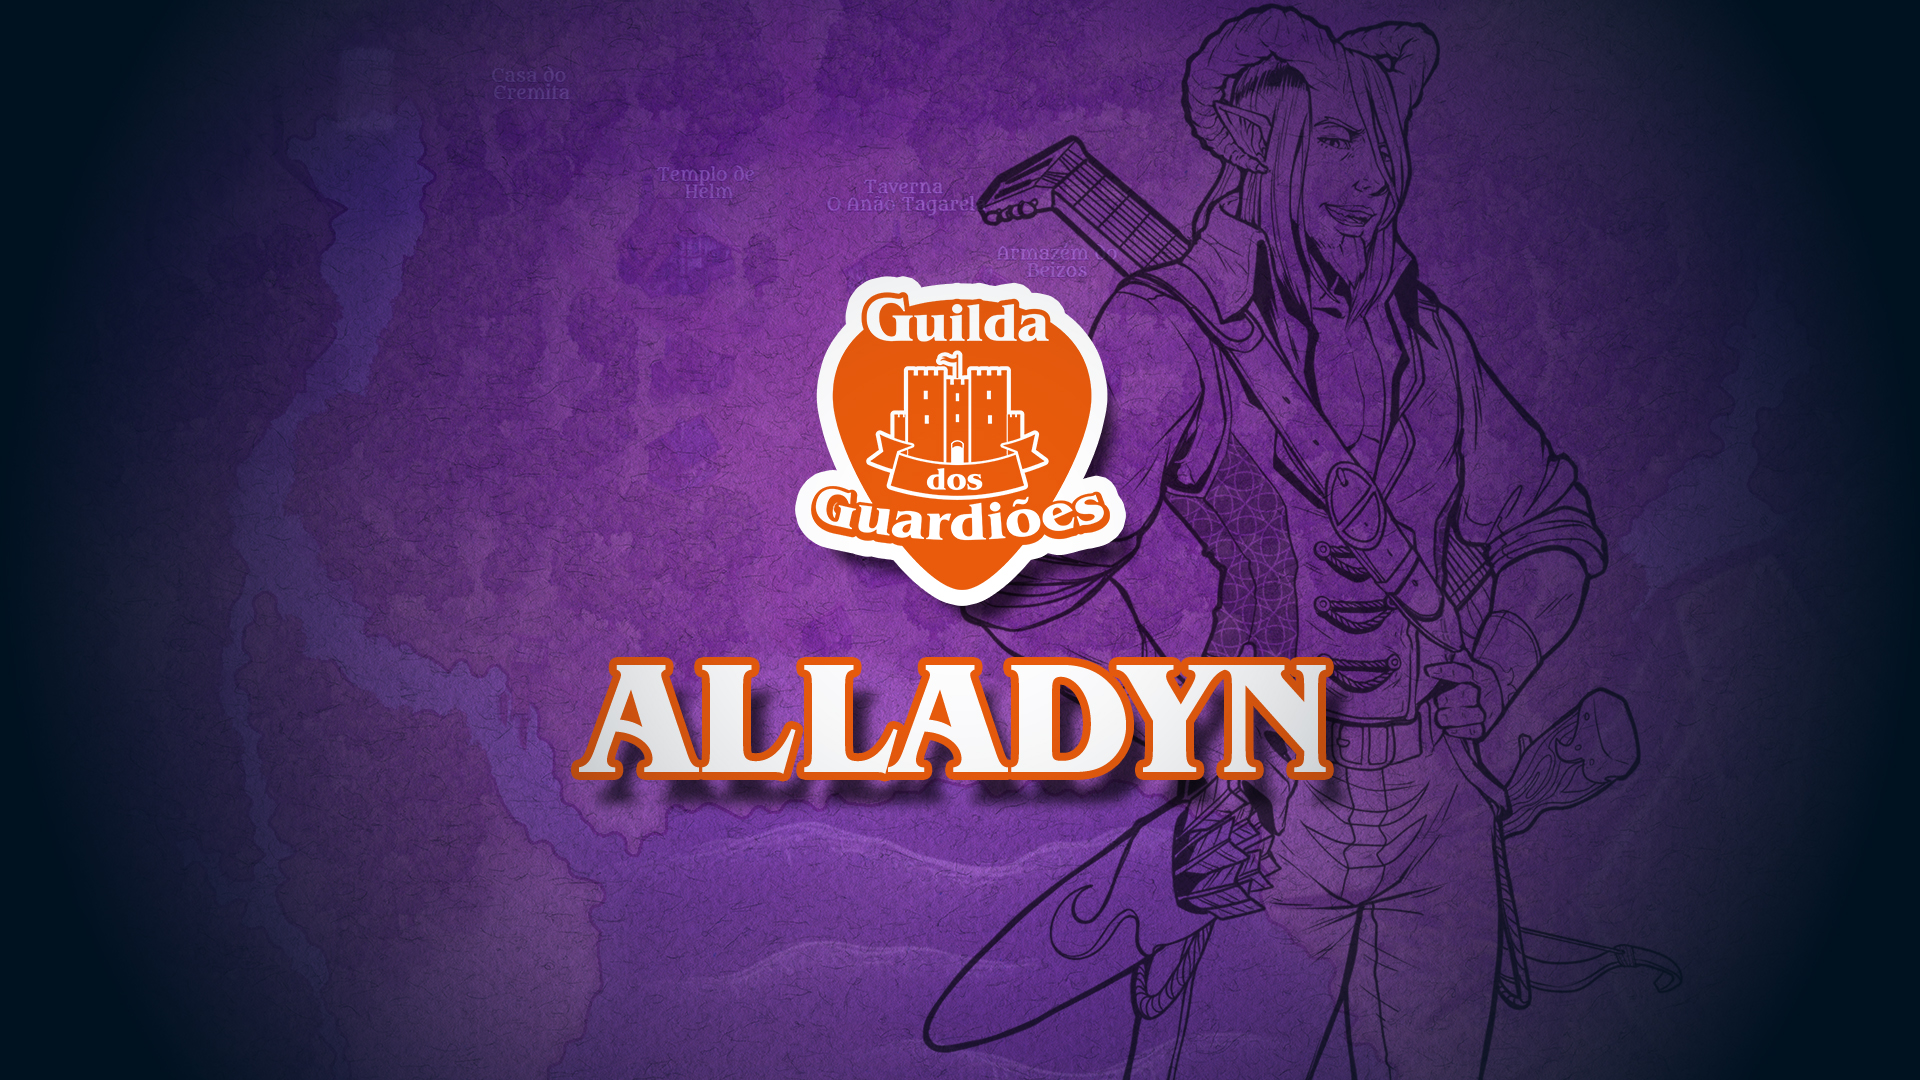 Alladyn Cyrus – Guilda dos Guardiões – NPCS – D&D 5ª Edição